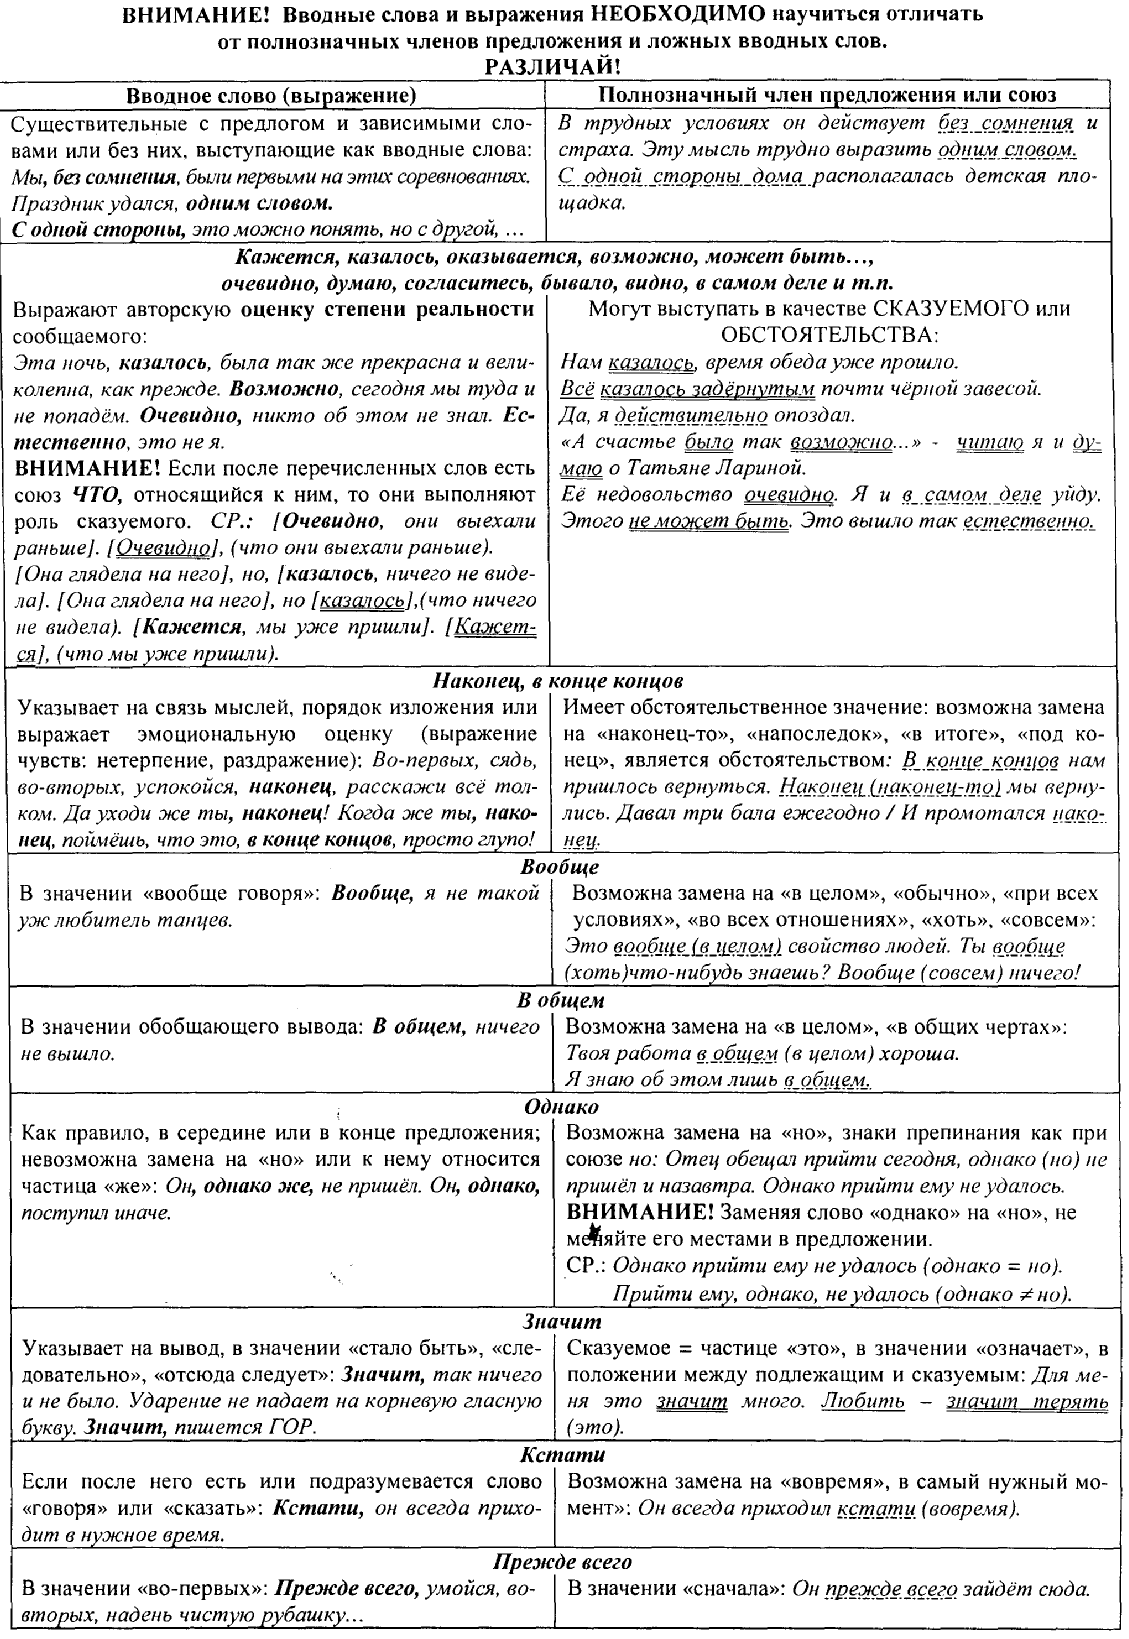 Конспект на тему Подготовка к ЕГЭ по русскому языку